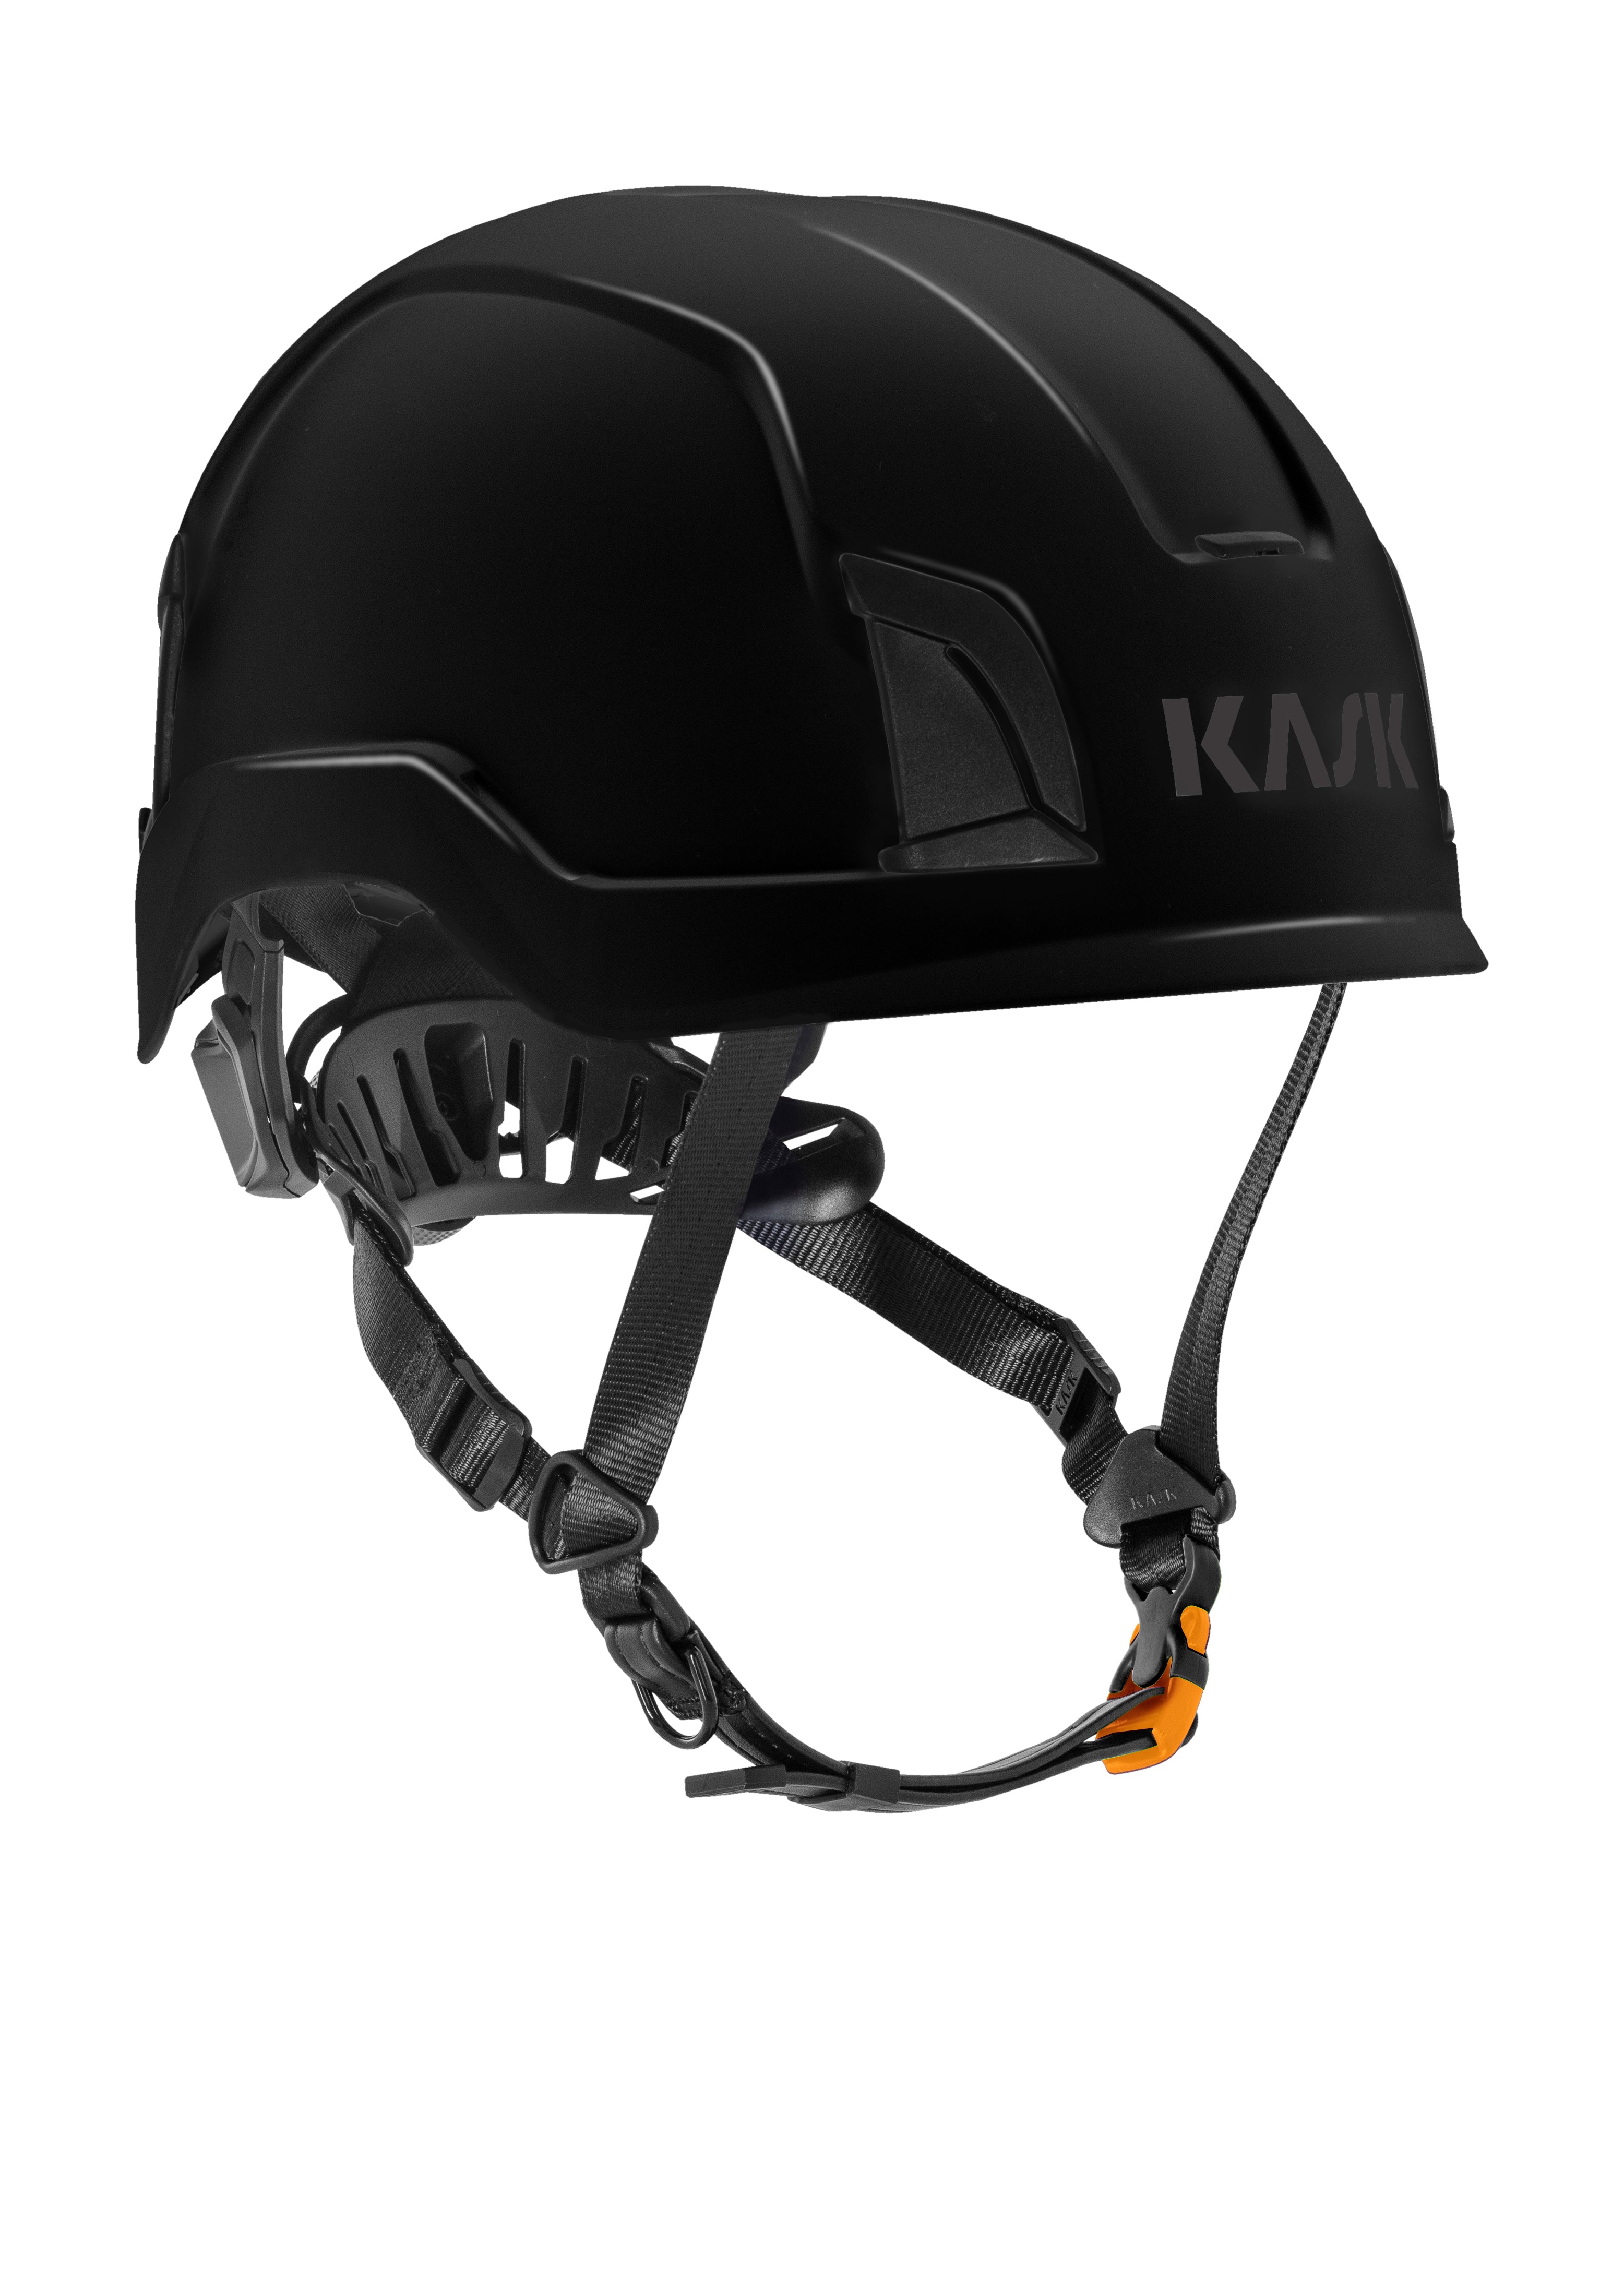 KASK Zenith X Helmet EN397 EN50365